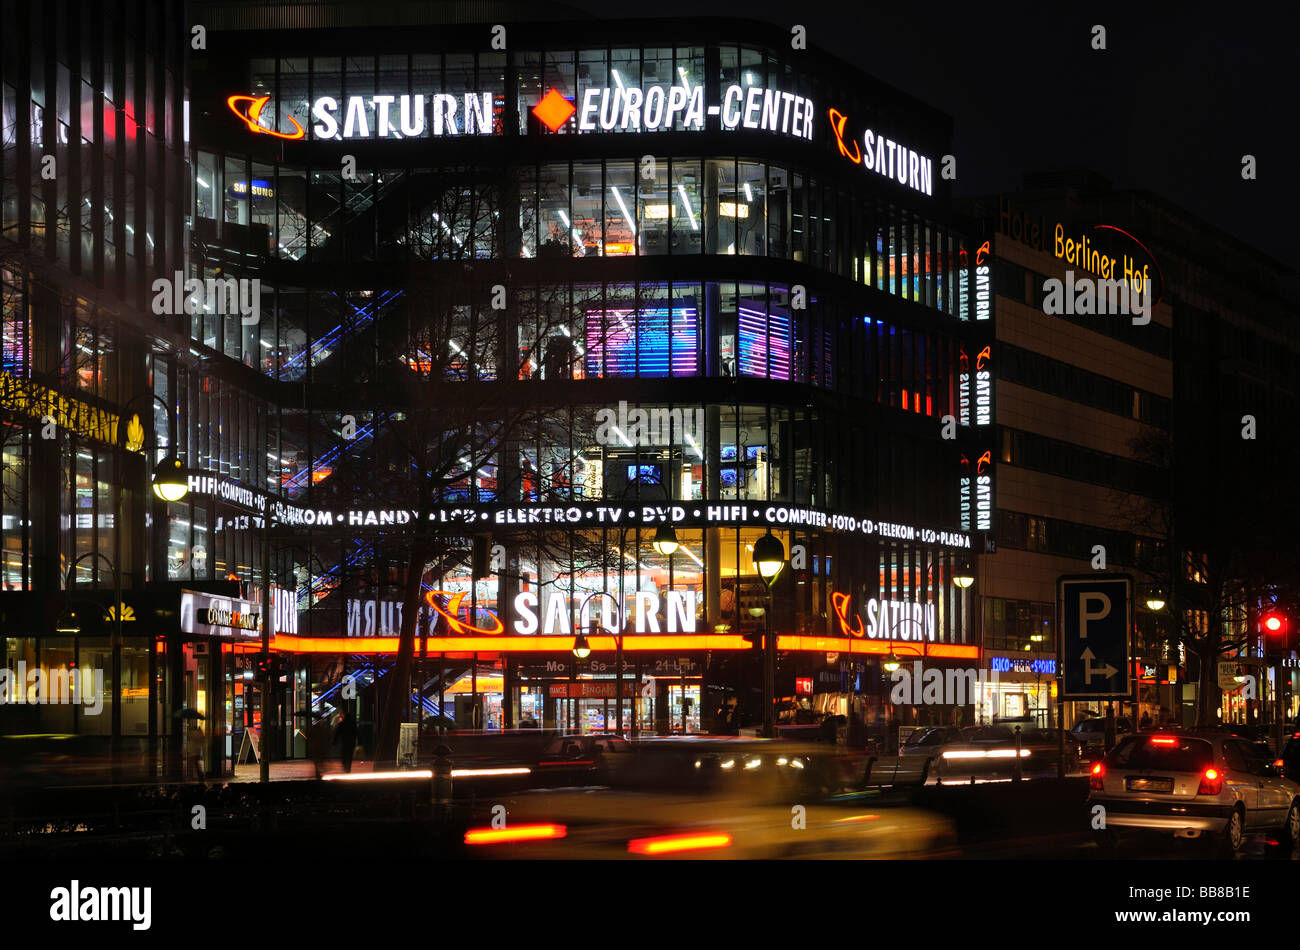 Especialidad de electrónica minorista Saturno flagship store en el Europa-Center, Tauentzien street, Berlín, Alemania Foto de stock